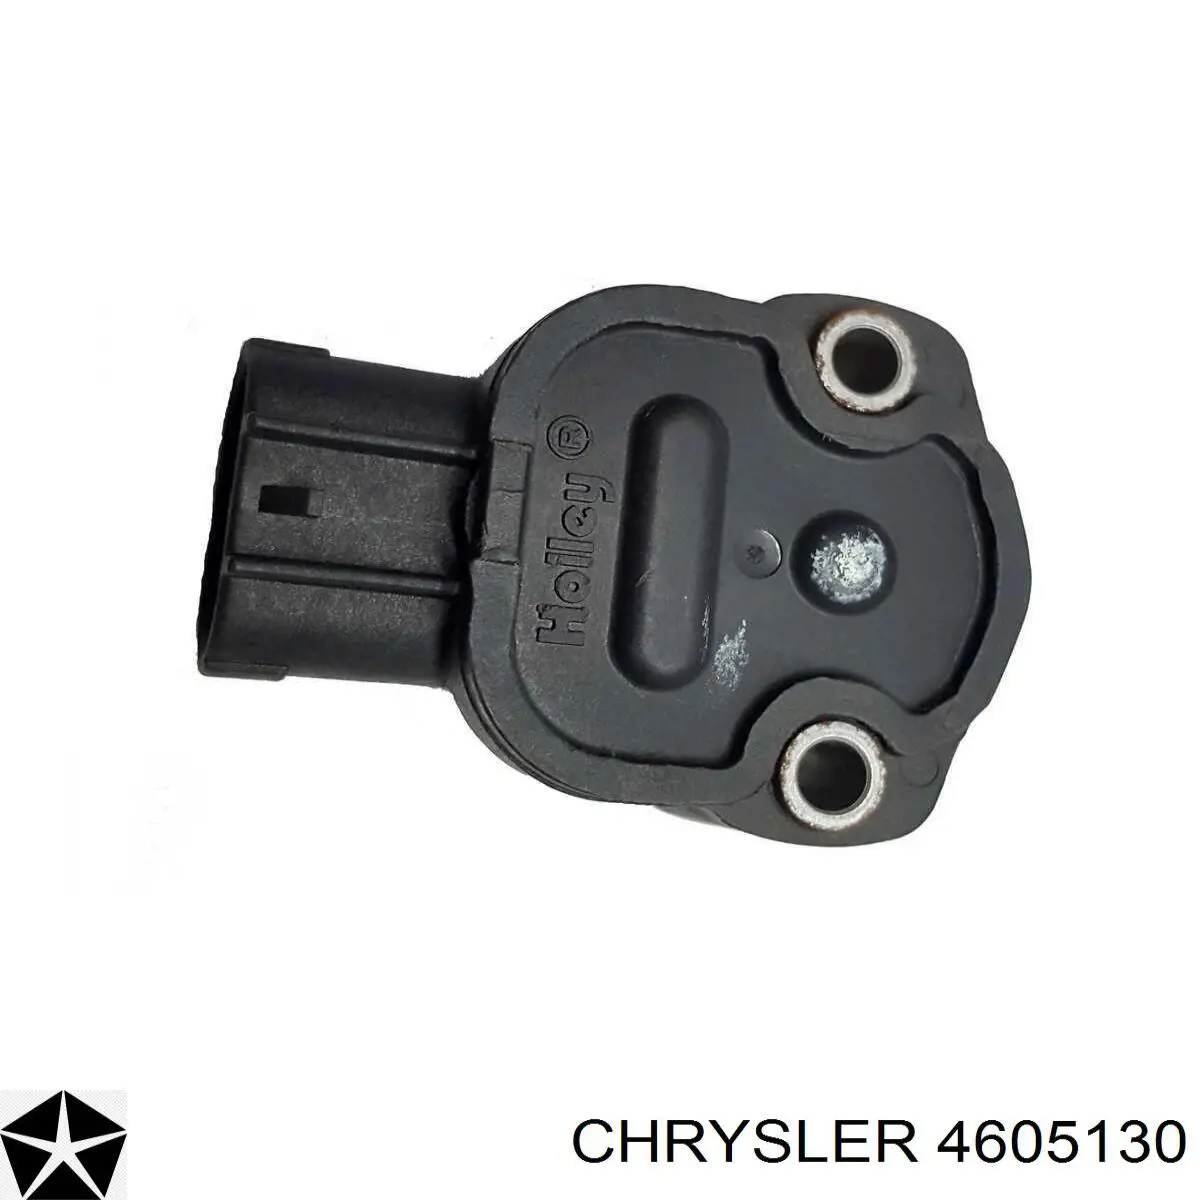 04605130 Chrysler датчик положения дроссельной заслонки (потенциометр)